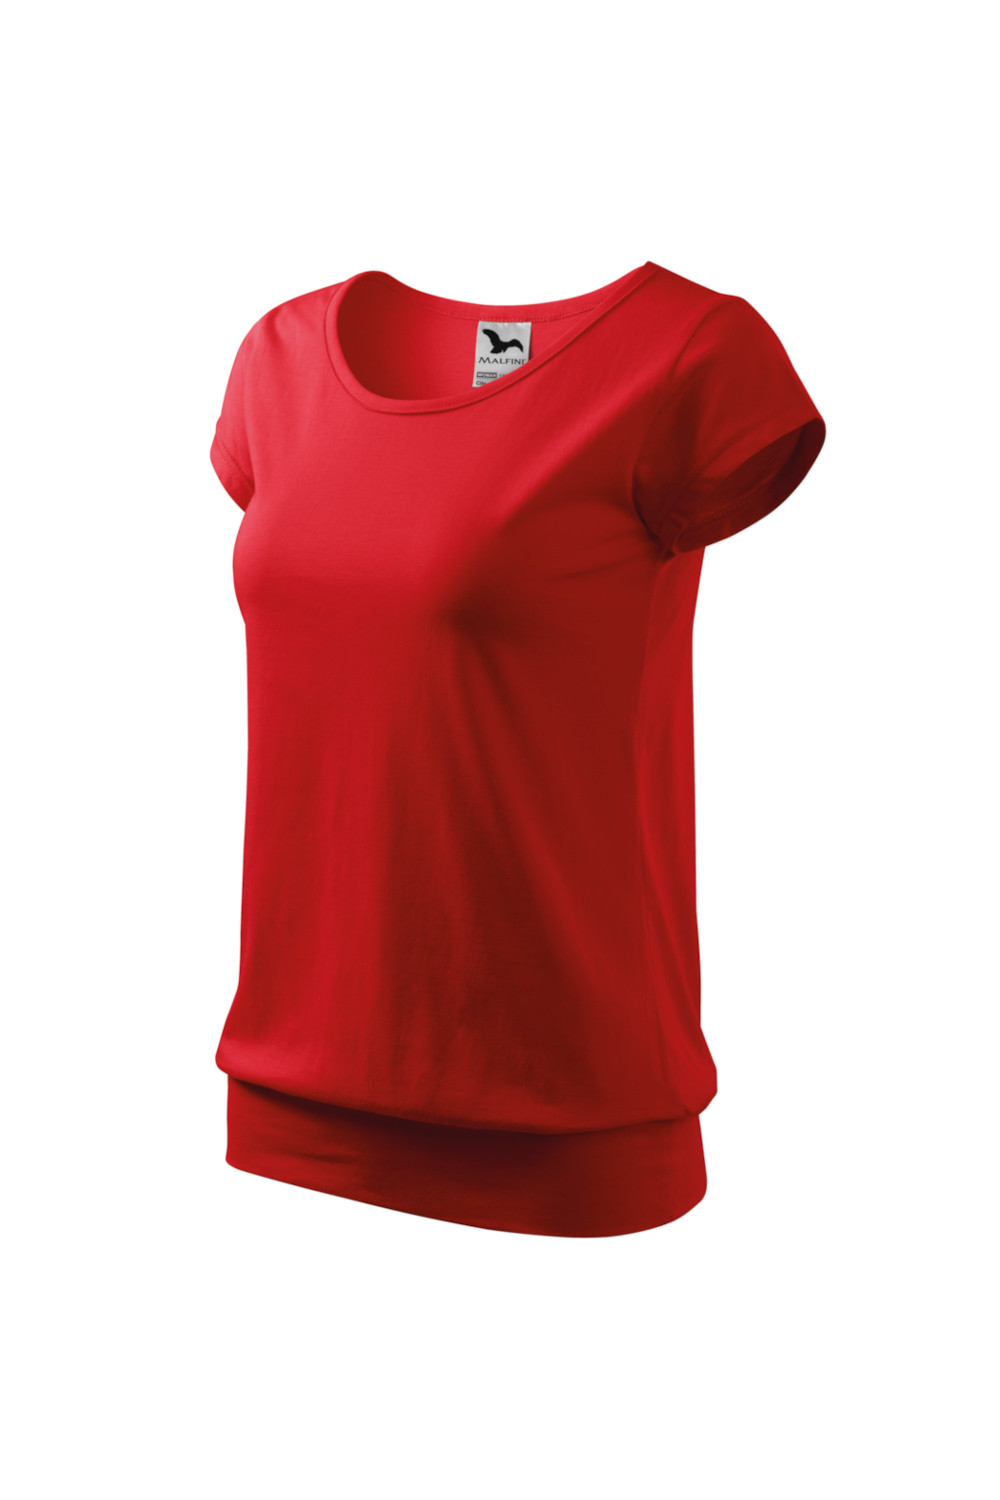 CITY 120 MALFINI Koszulka damska 100% bawełna t-shirt czerwony